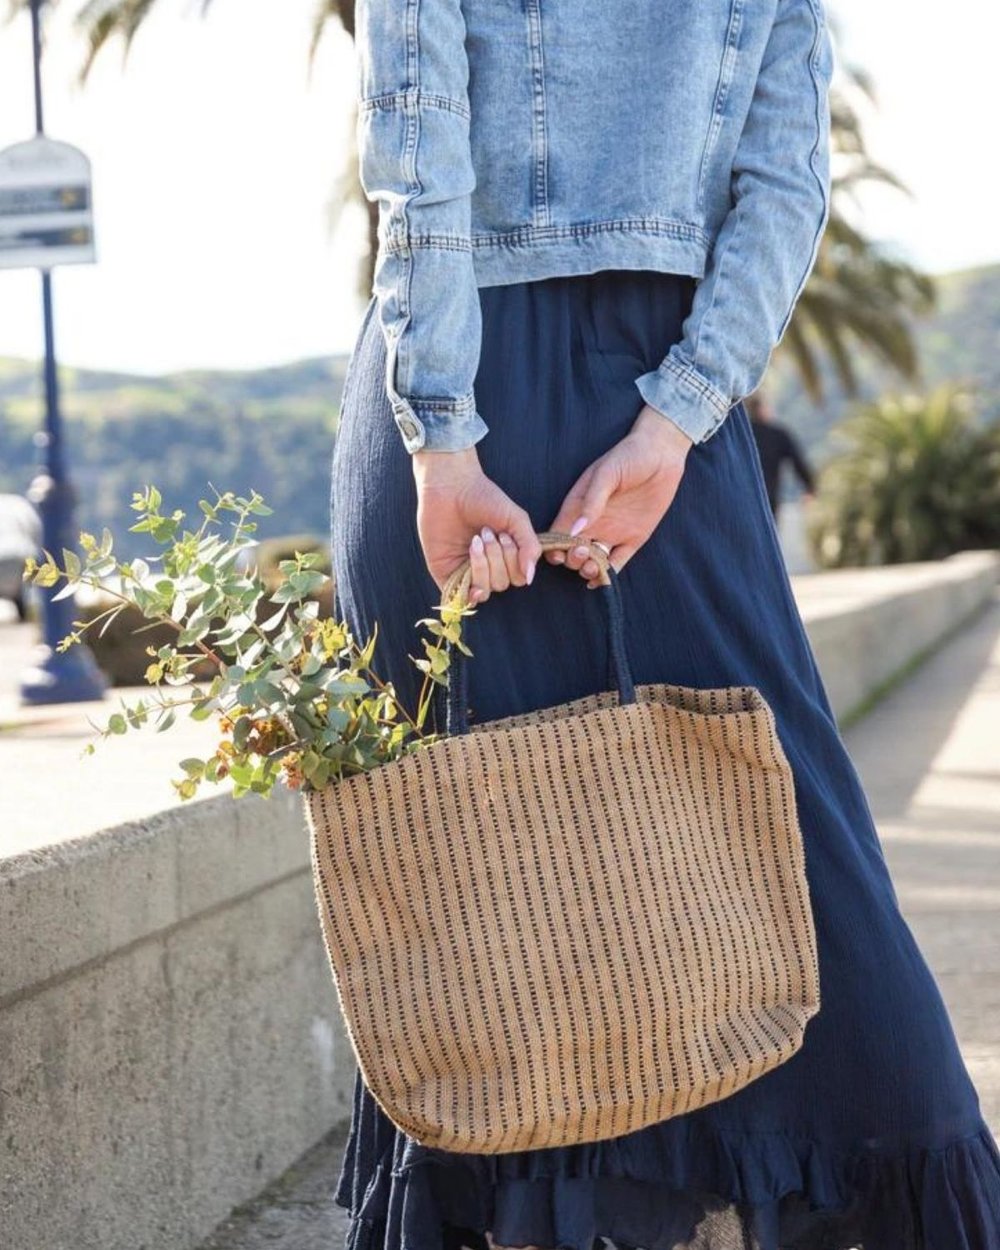 Details about   Beach Woven Fiber Tote Bag Summer Blue Natural Organic Handmade Artisan 